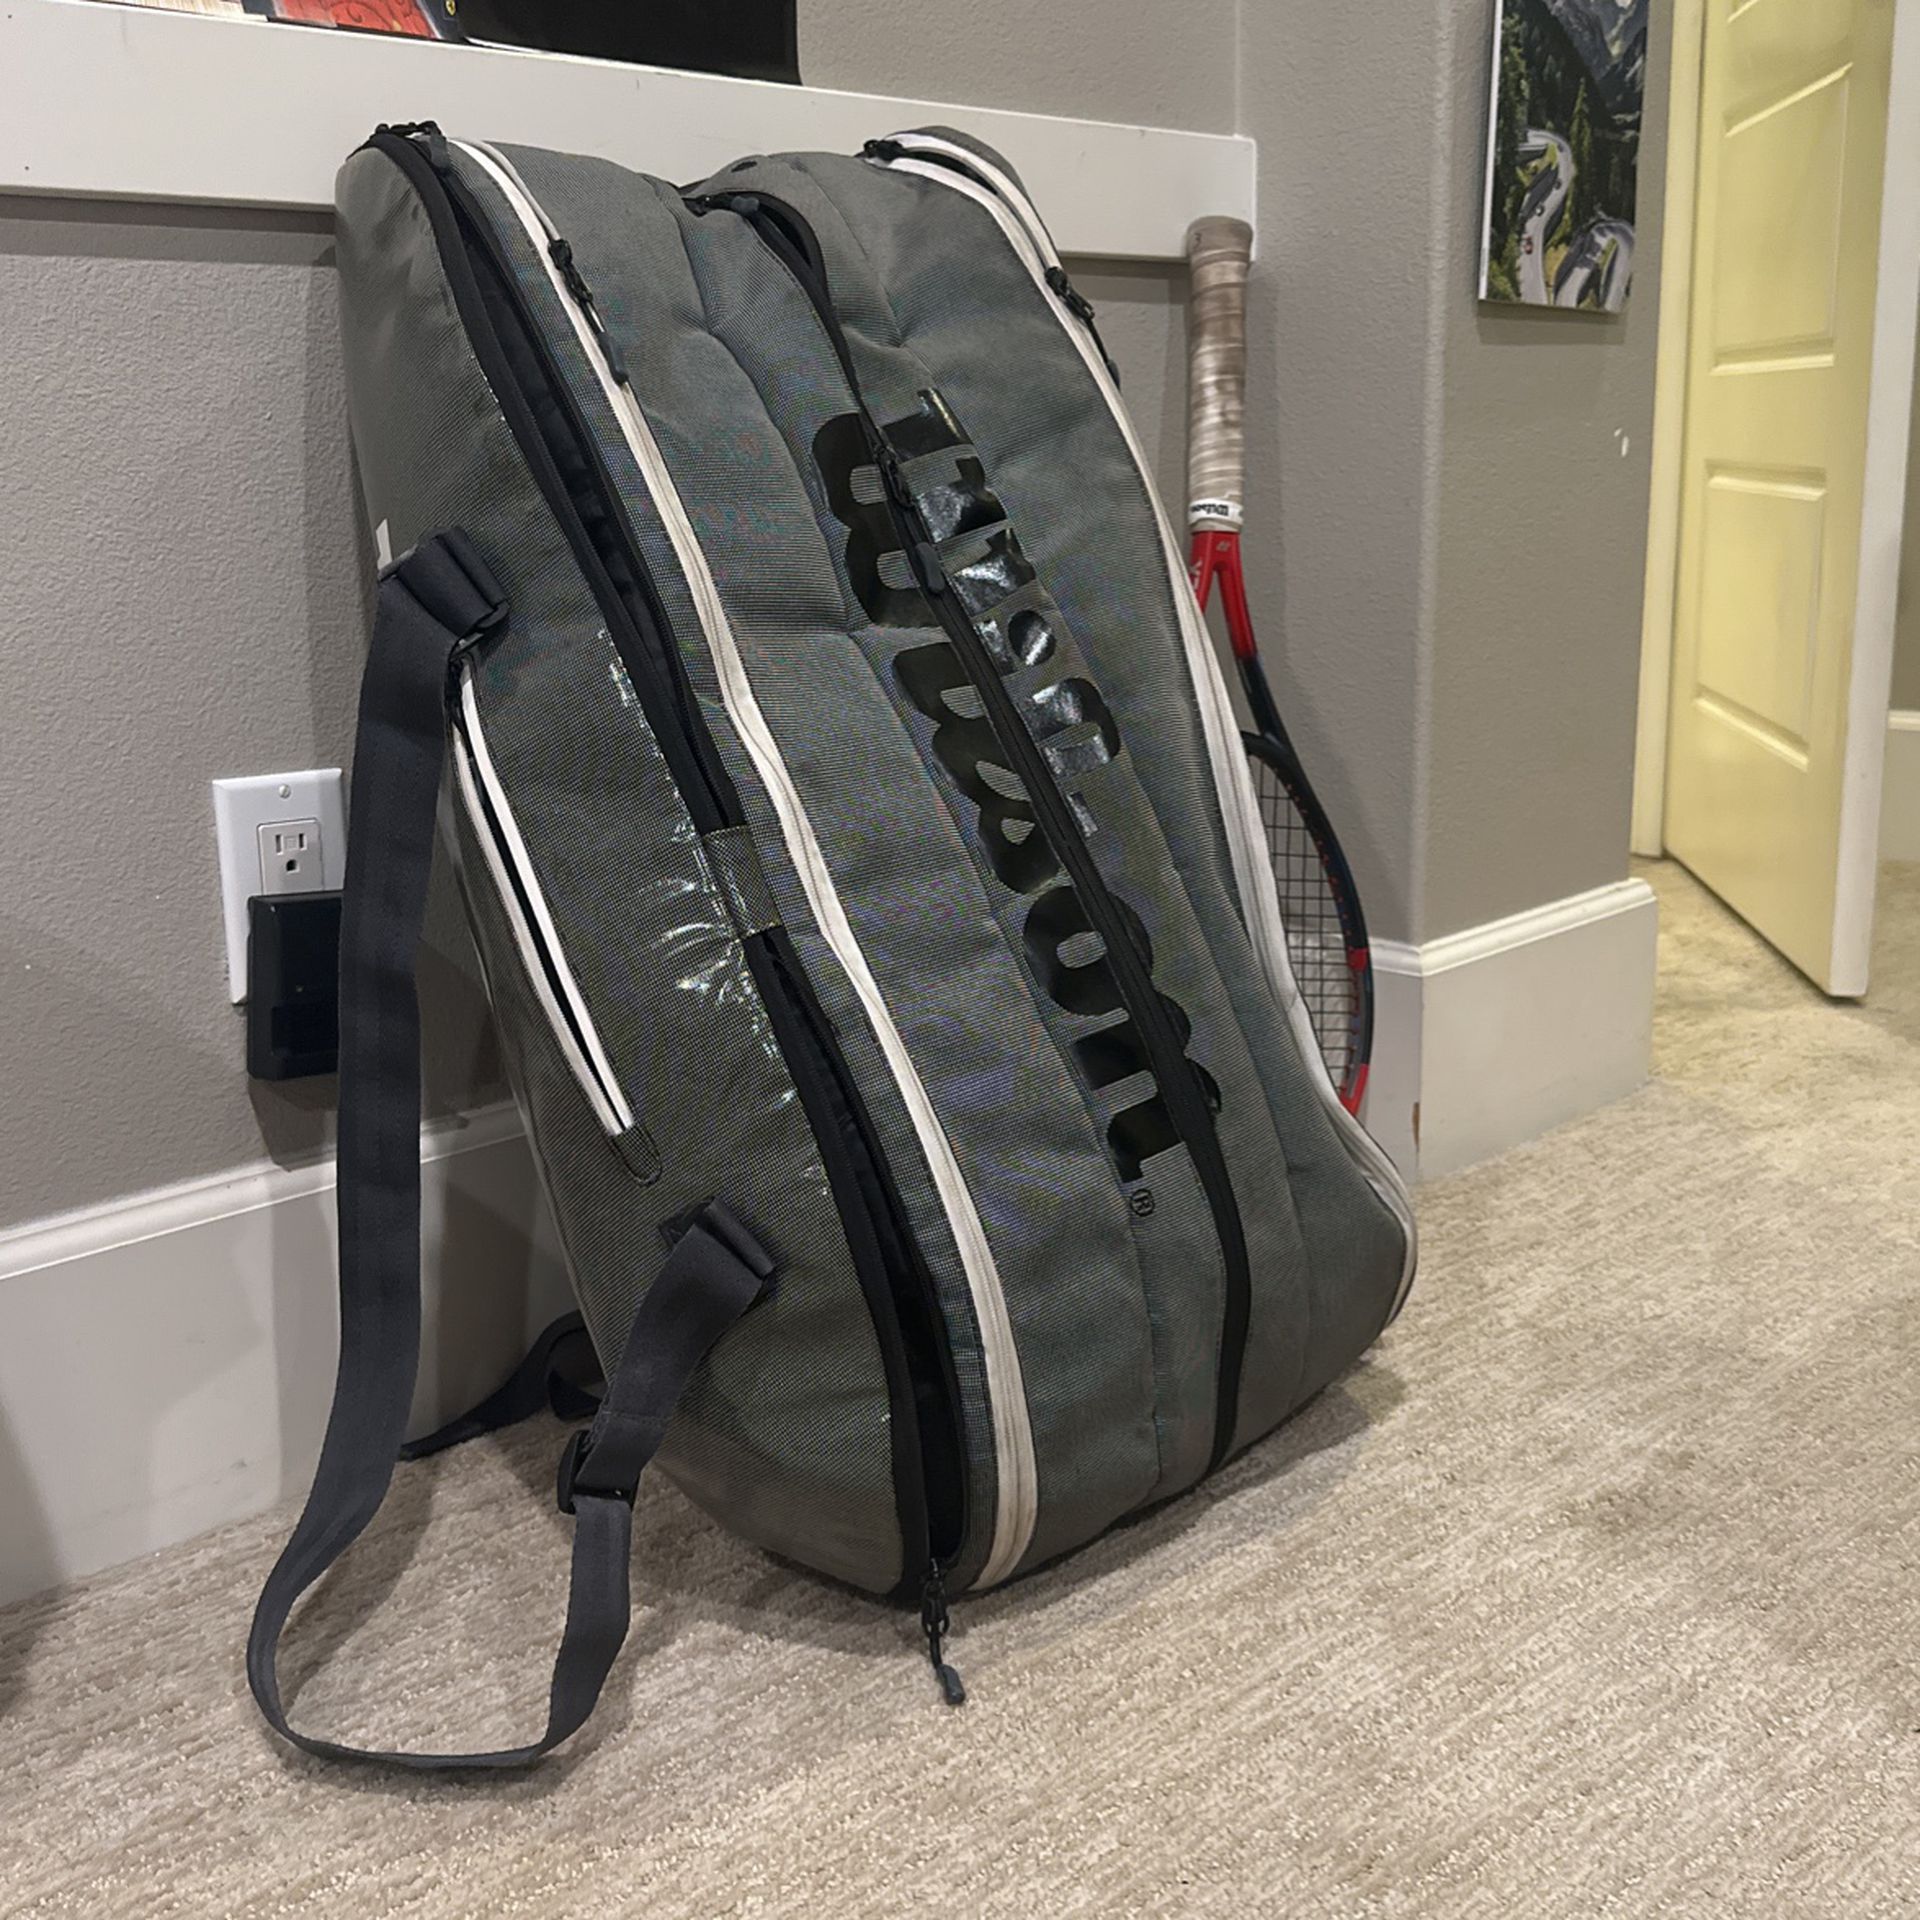 Tennis Bag